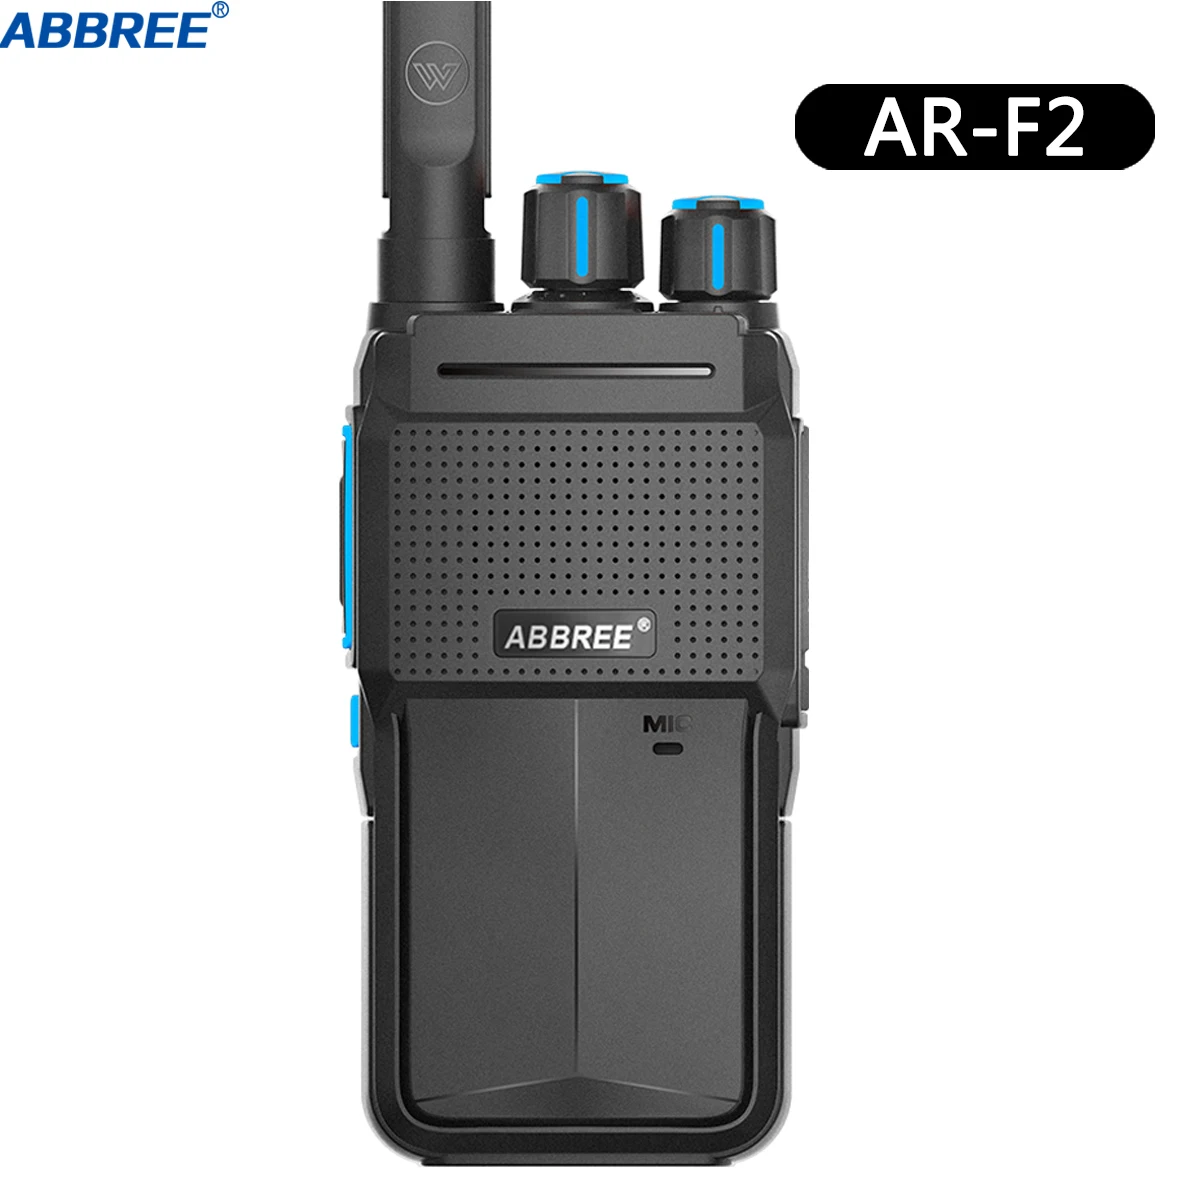 ABBREE AR-F2 мини иди и болтай Walkie Talkie двухстороннее Радио BF-888S UV-5R(двухстороннее радио-2 шт.)(передающая радиоустановка) uhf диапазона 400-480 Любительское радио МГц - Цвет: only radio